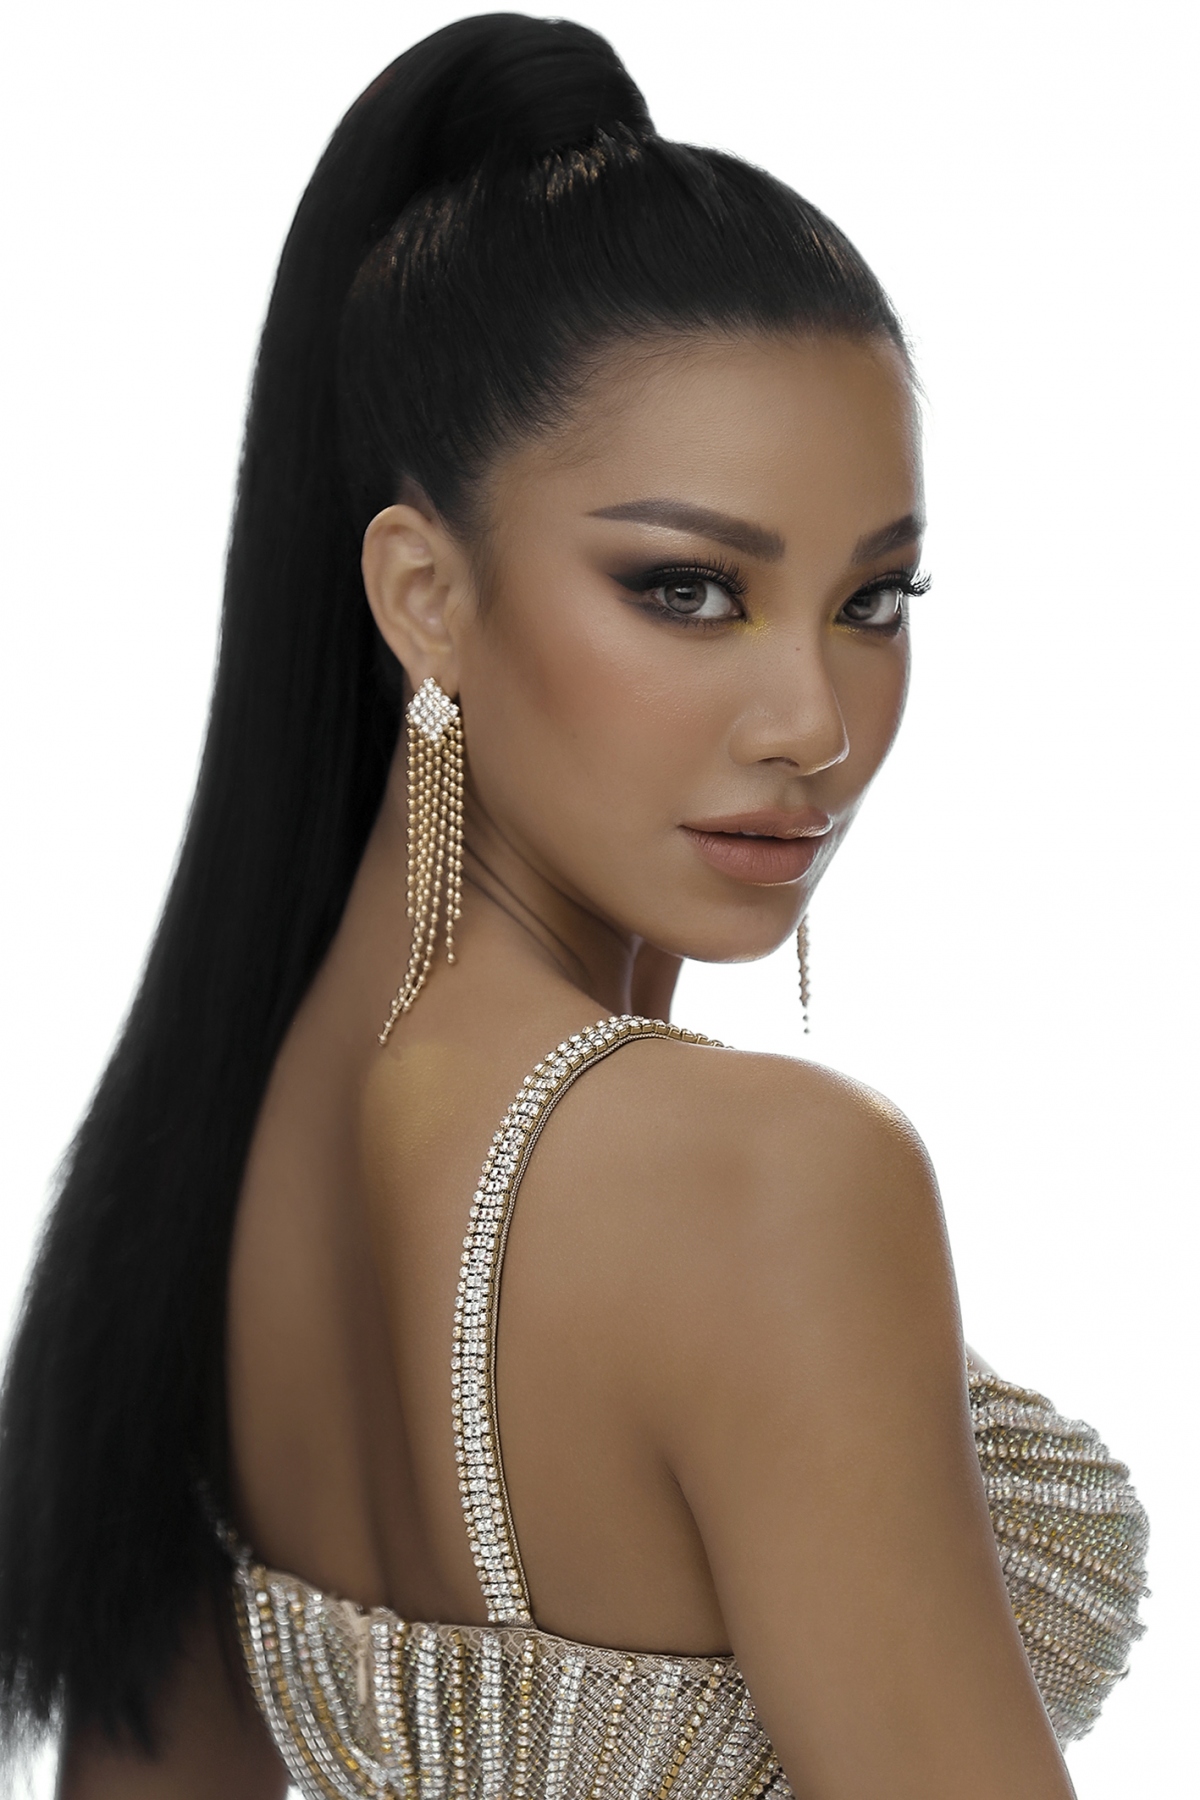 Kim Duyên đã chính thức khởi hành sang Israel vào tối 26/11 để tham dự Miss Universe 2021 lần thứ 70.